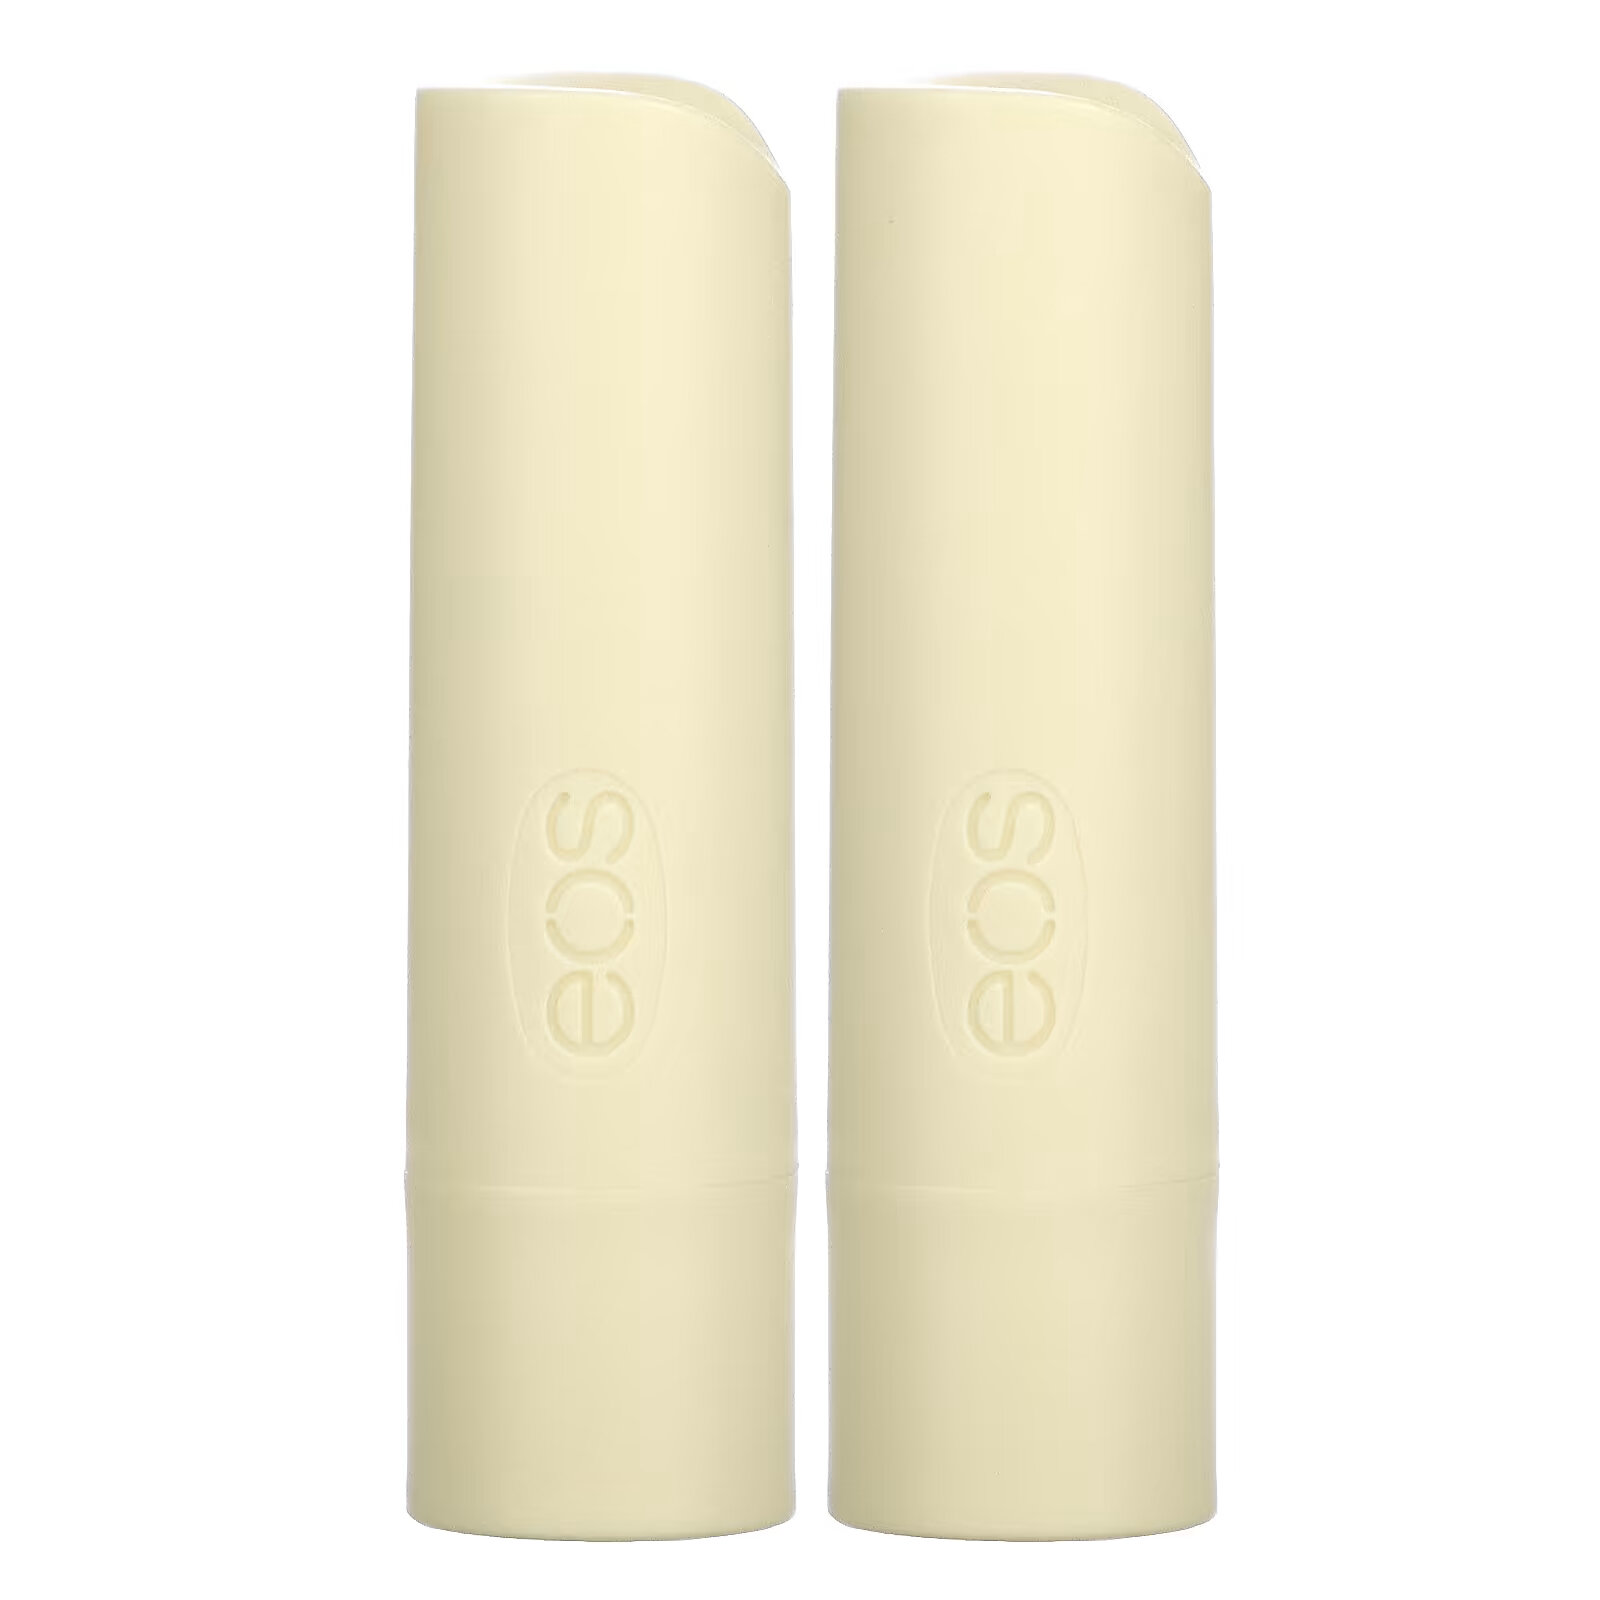 EOS, 100% органический натуральный бальзам для губ с ши, ванильные бобы, 2 шт. в упаковке, 4 г (0,14 унции)